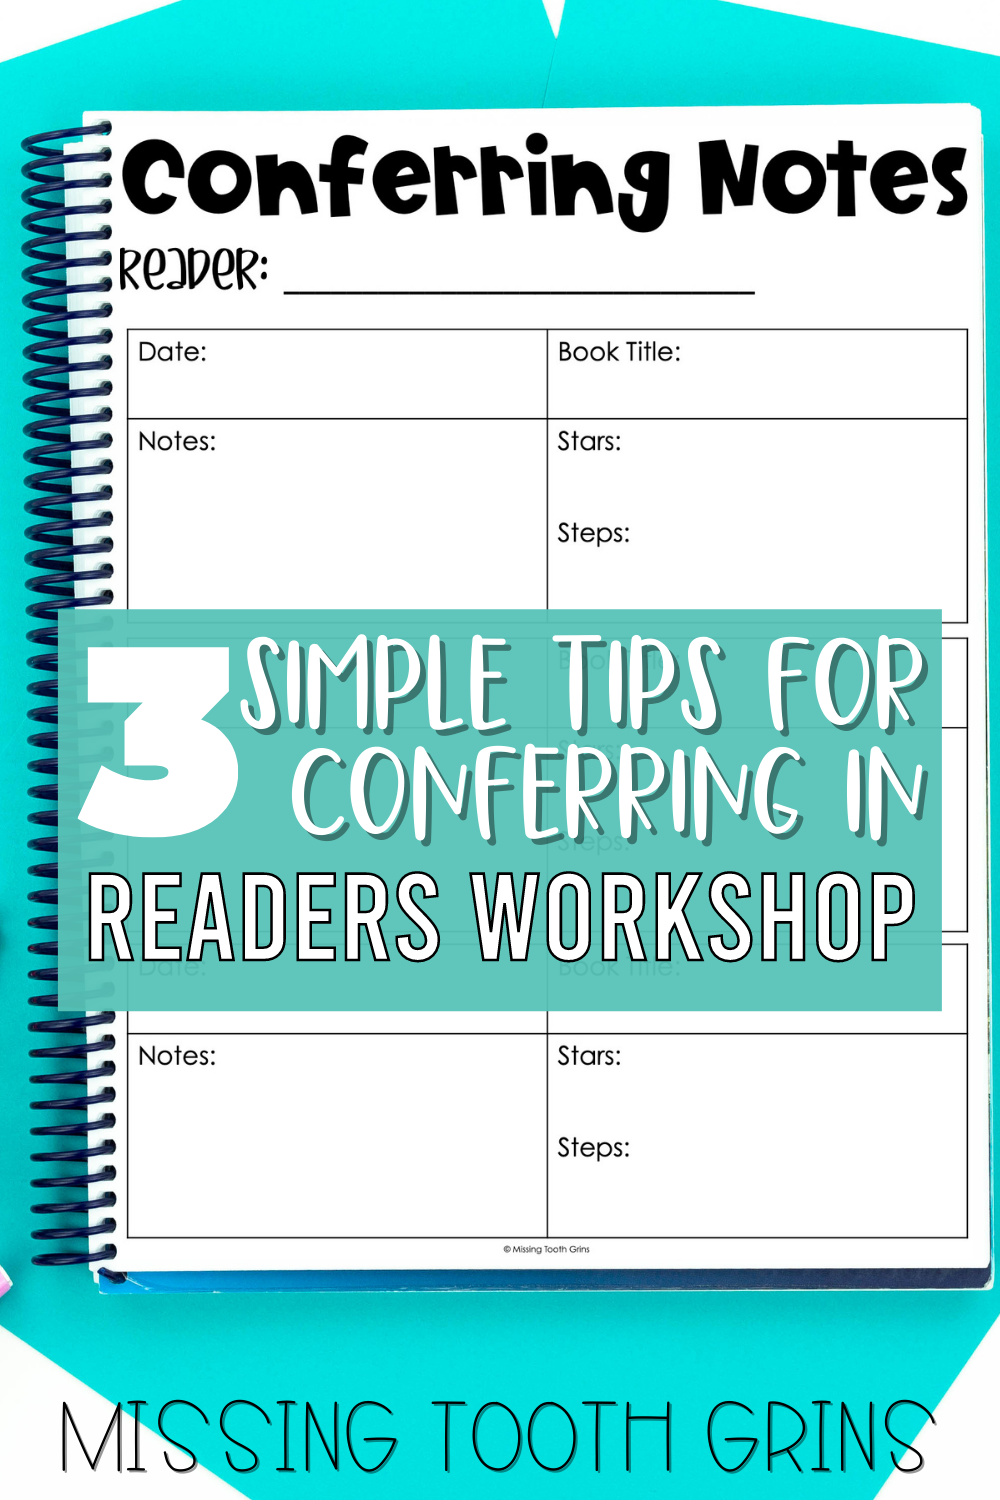 Blog post on conferring in reader's workshop